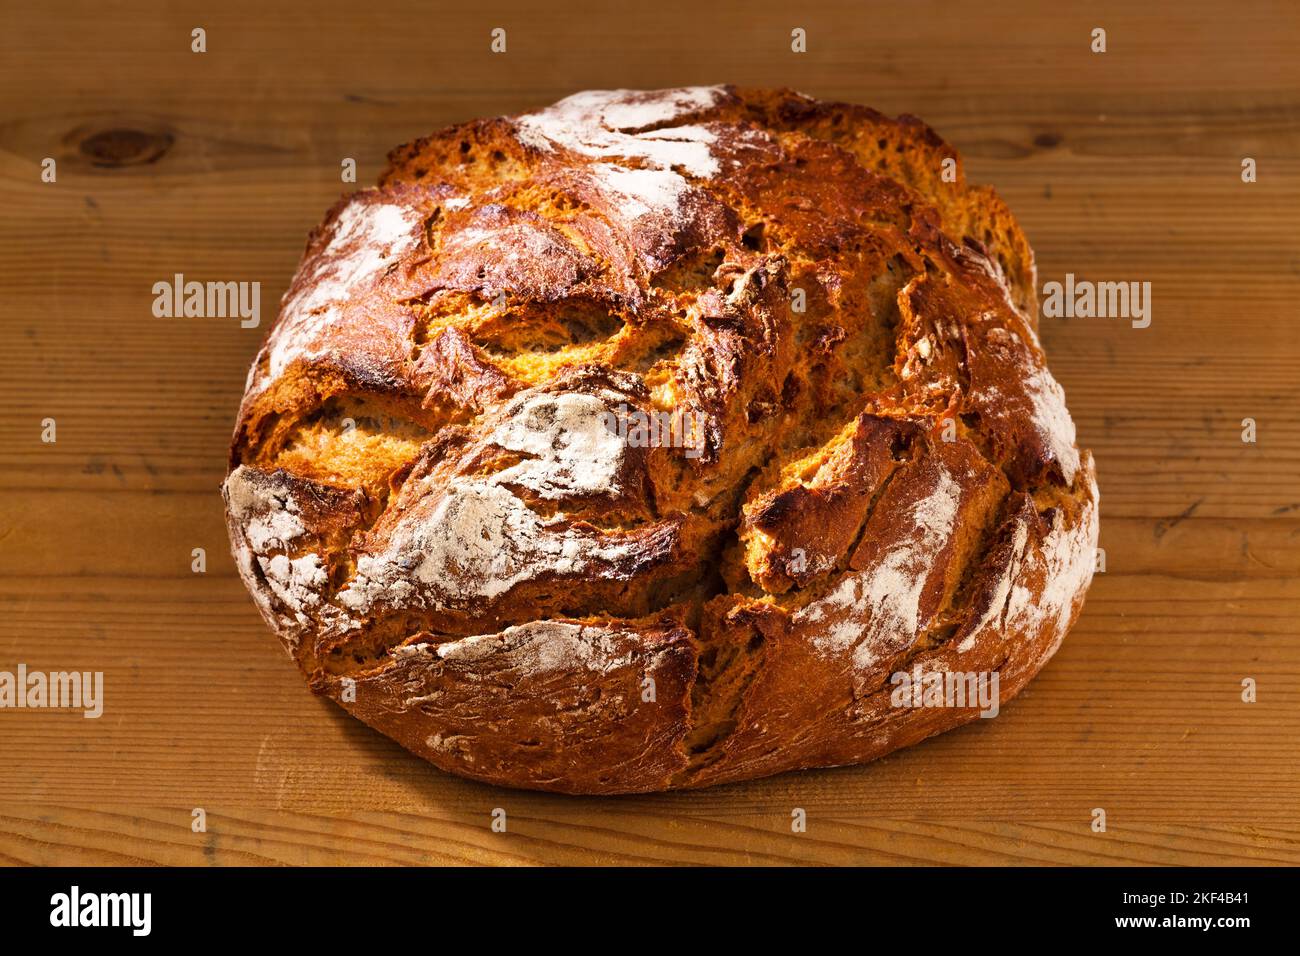 Bouillon Ein Laib Gesunde Ernährung durch frische Backwaren, Rustikales Brot, Bauernbrot, Krutenbrot, Banque D'Images